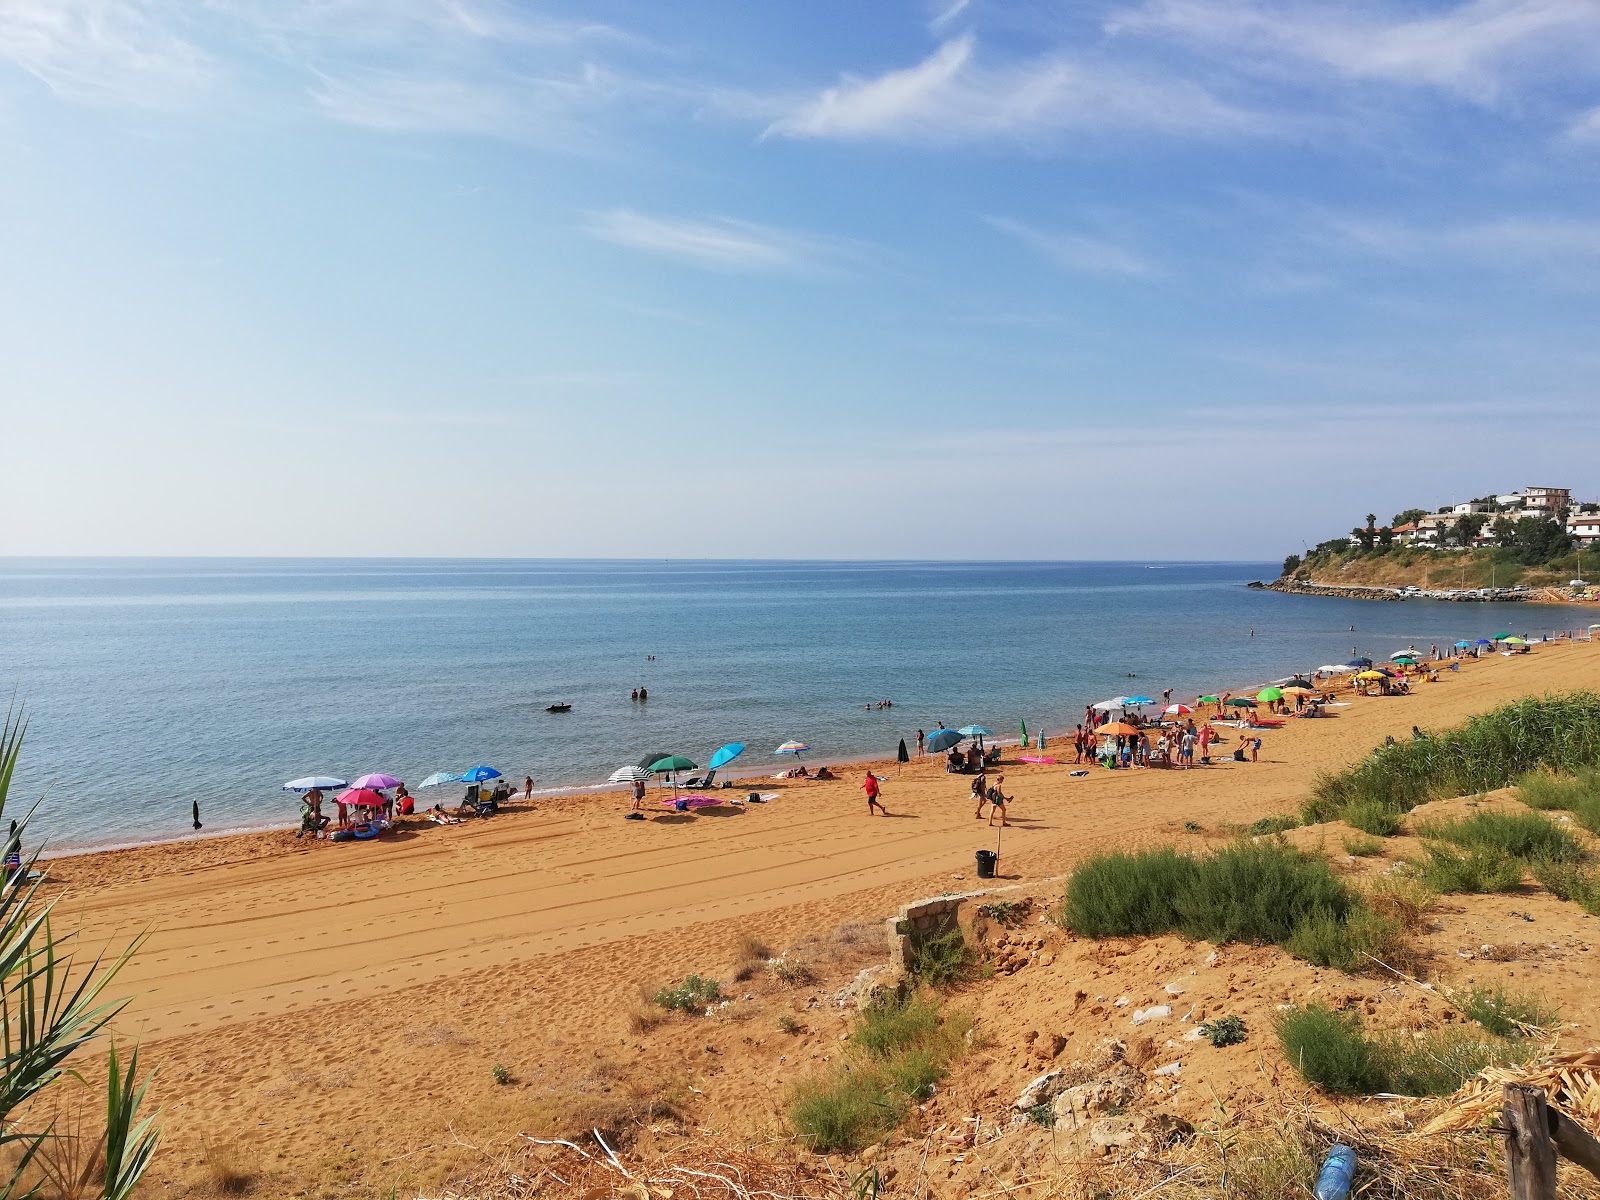 Spiaggia Le Cannella'in fotoğrafı i̇nce kahverengi kum yüzey ile